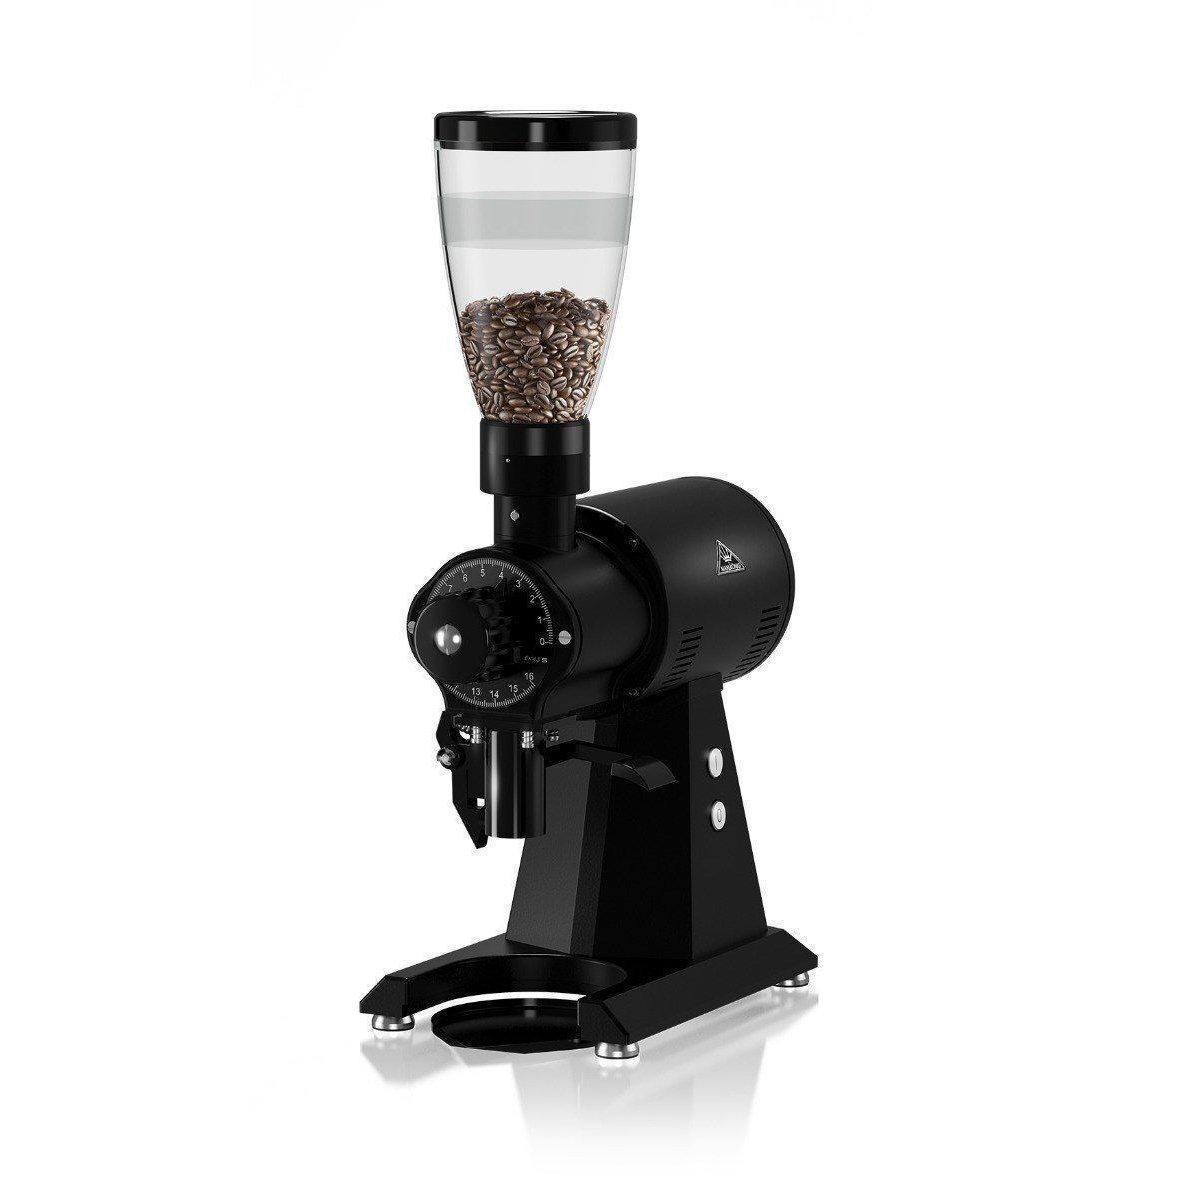 Mahlkonig DK 27 LVS Industrial Coffee Grinder